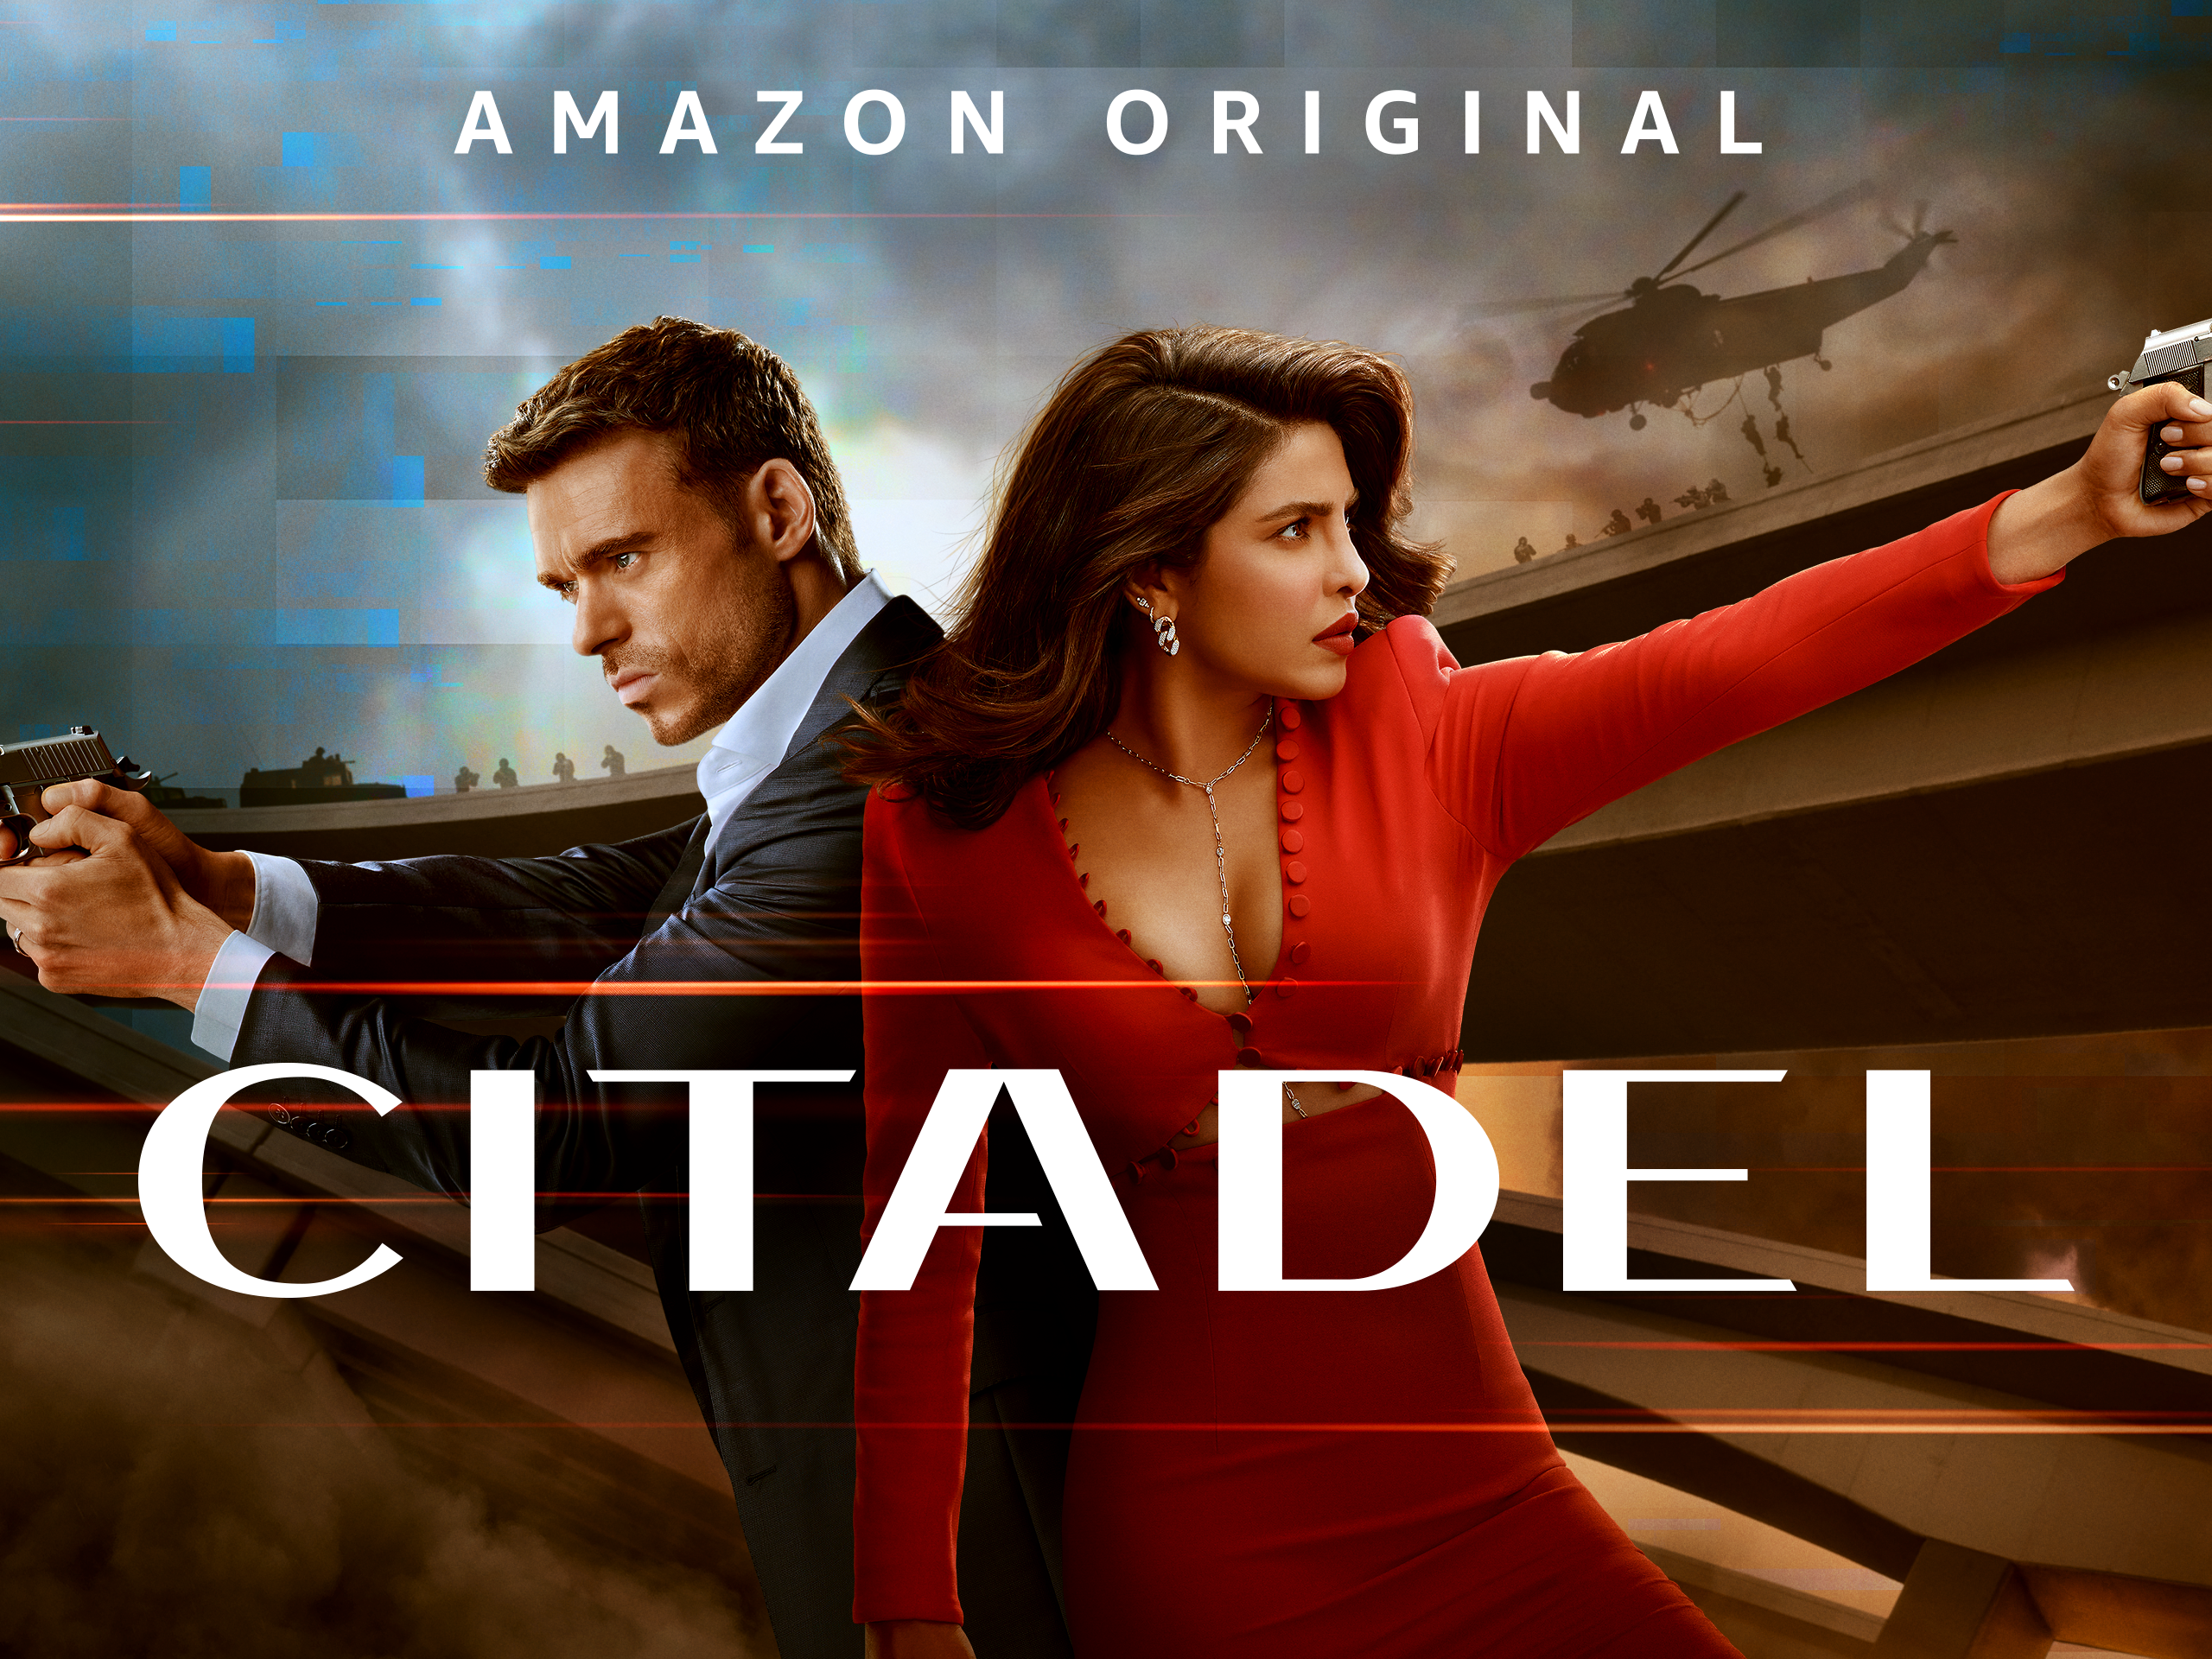 Amazon Series Citadel